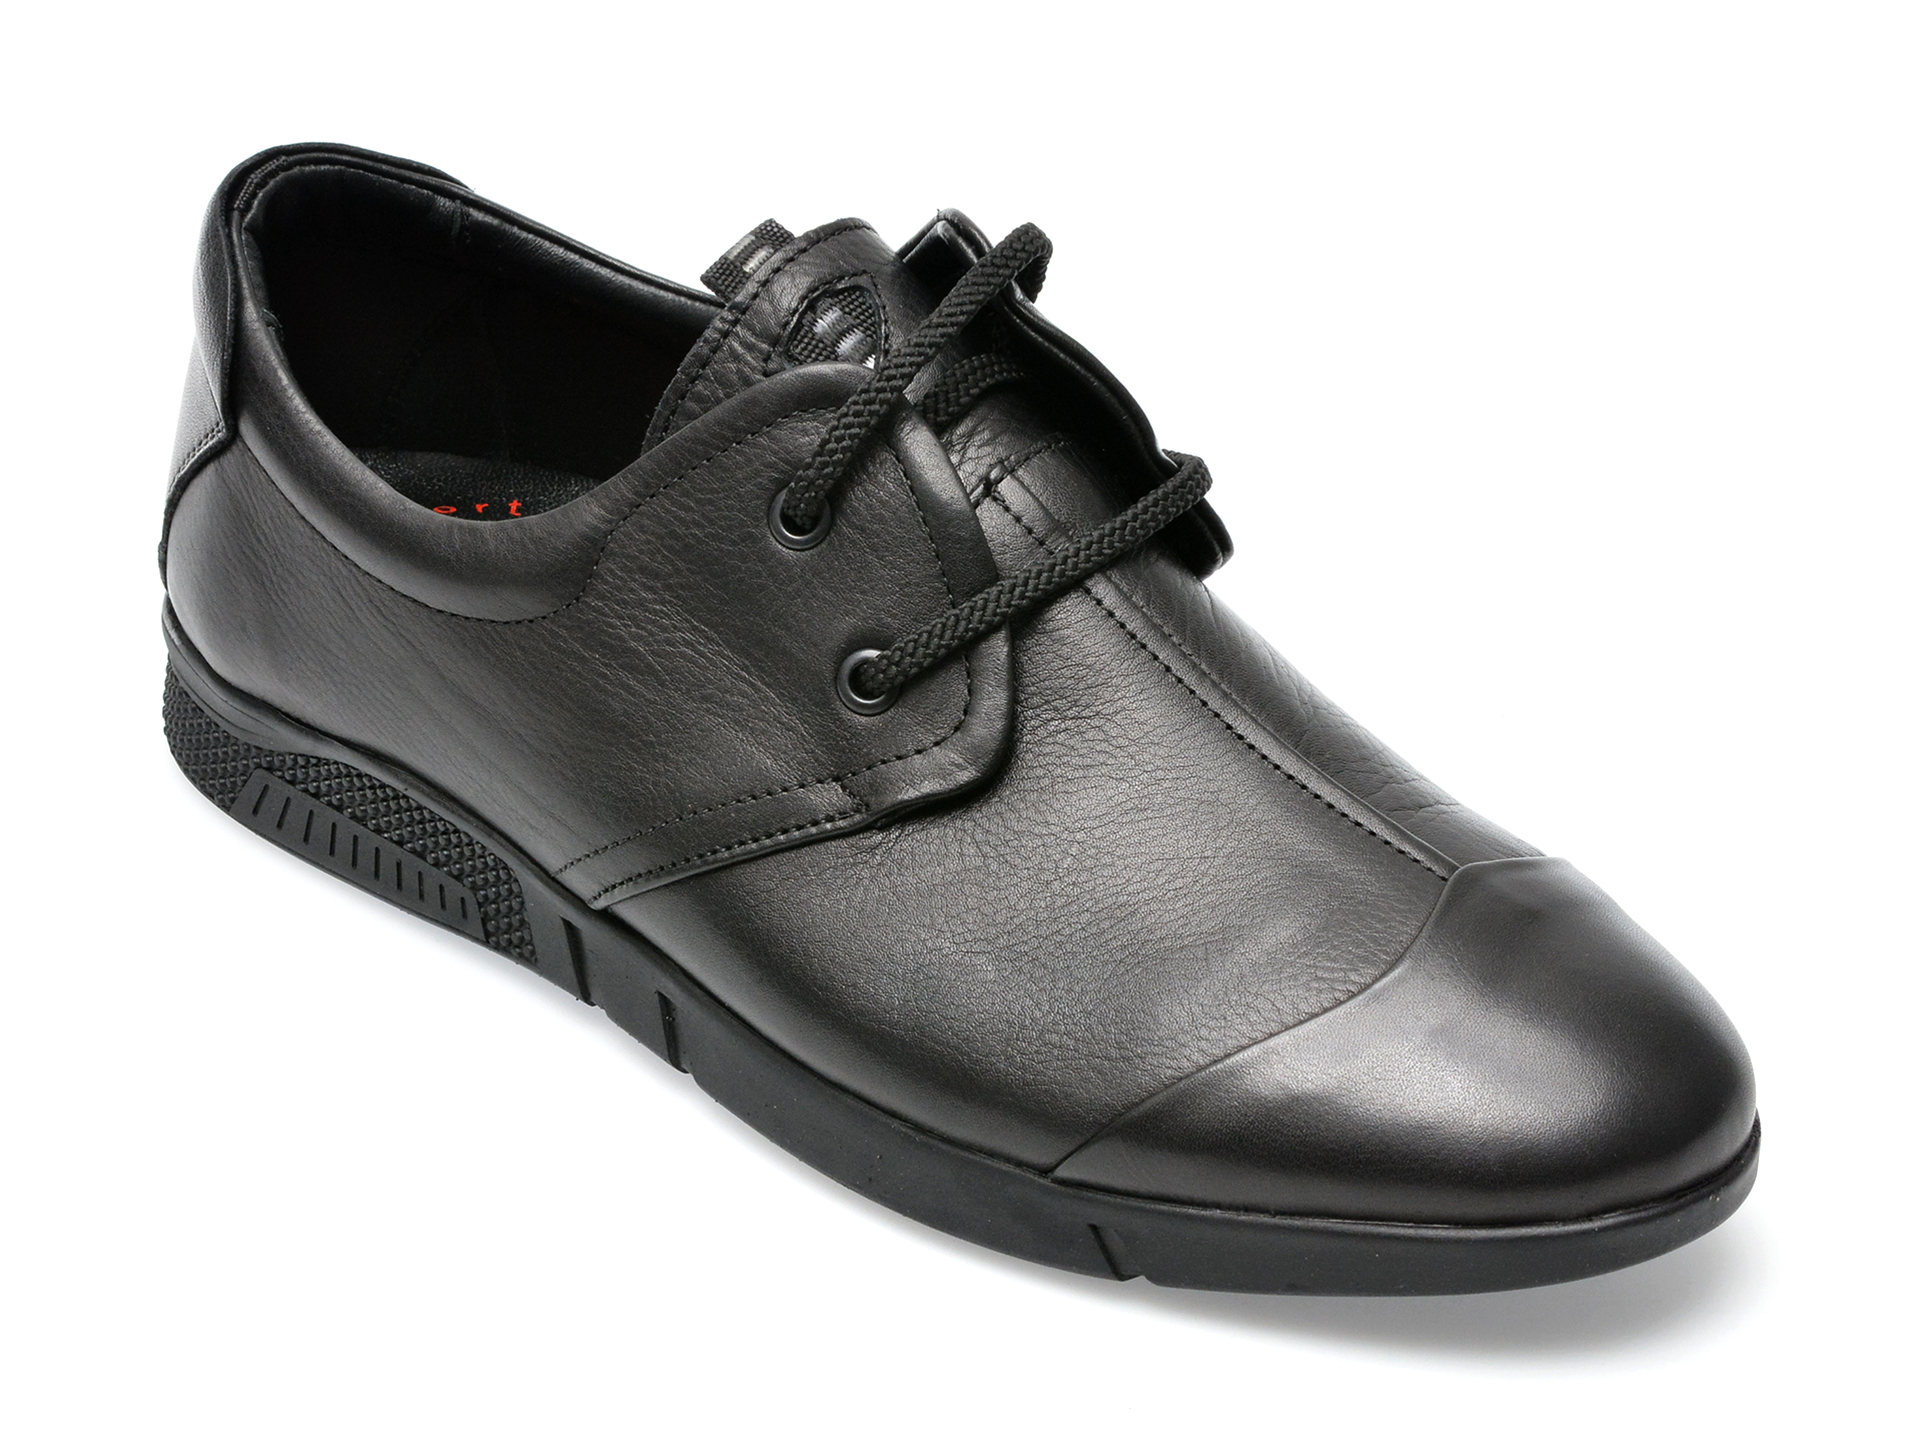 Poze Pantofi OTTER negri, 99110, din piele naturala Tezyo